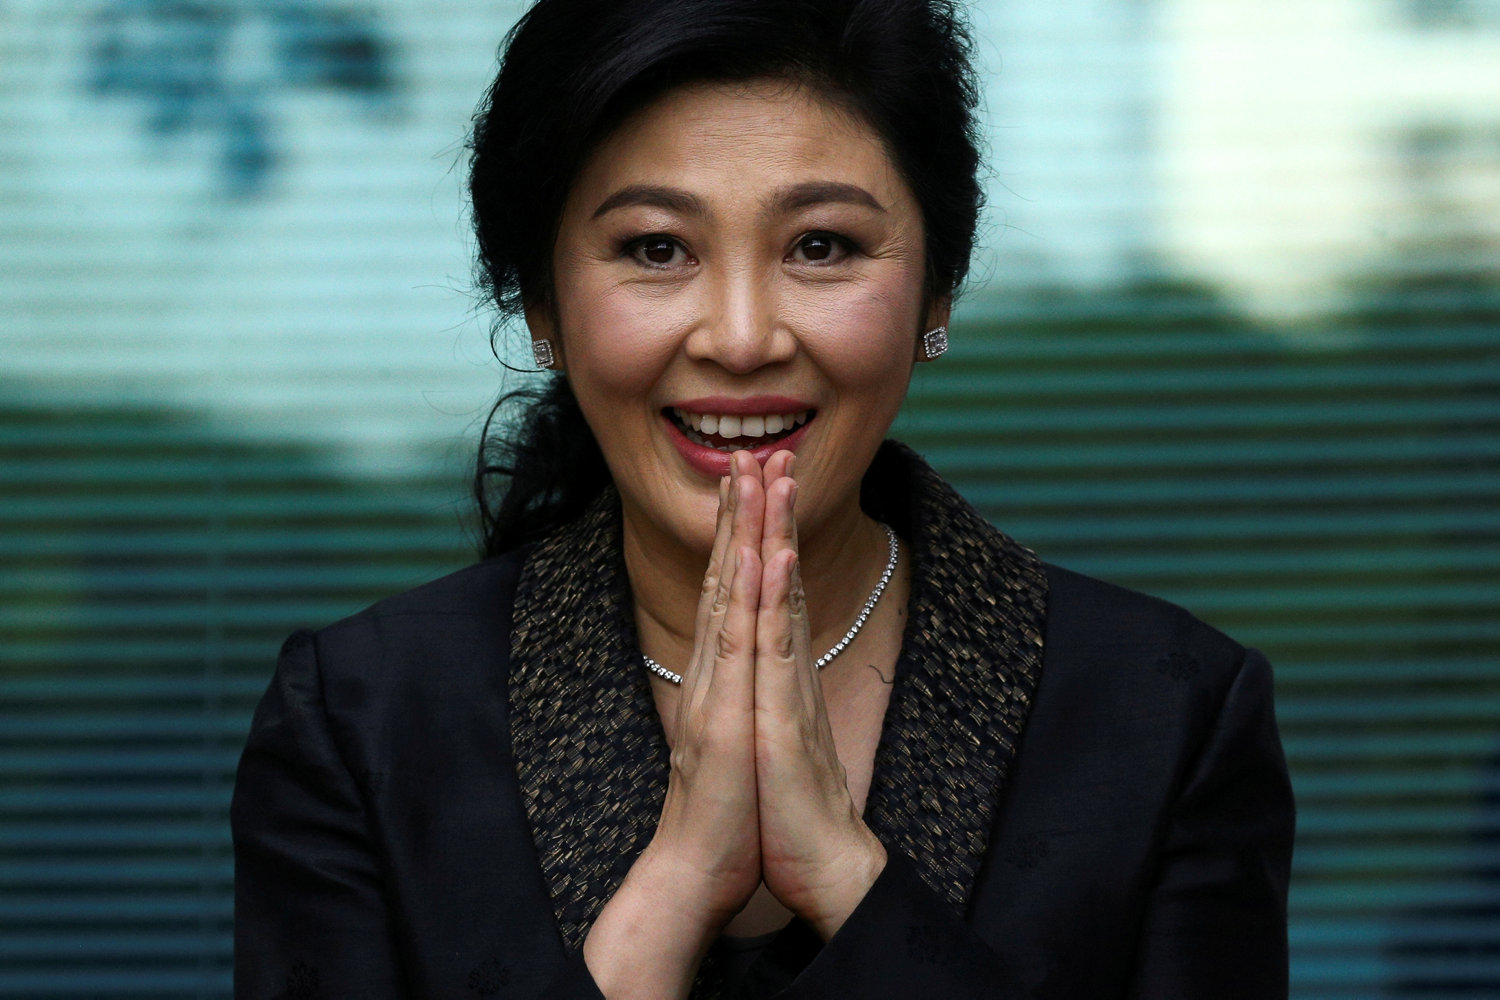 eks-premierminister frifindes for korruptionsanklager i thailand